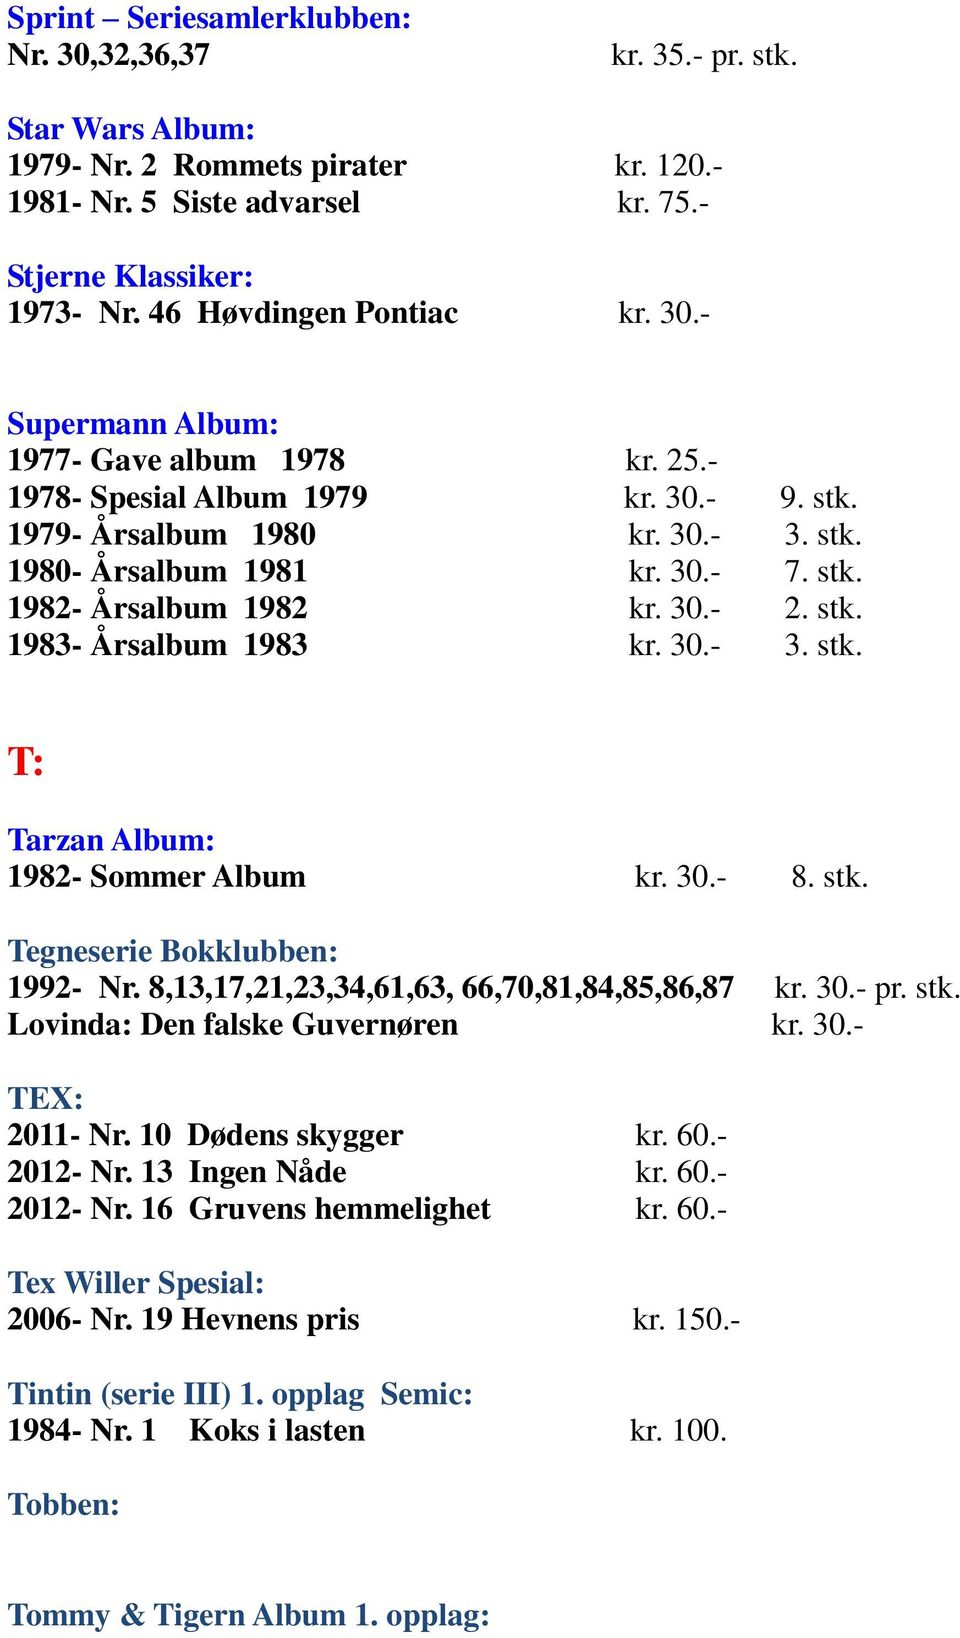 30.- 2. stk. 1983- Årsalbum 1983 kr. 30.- 3. stk. T: Tarzan Album: 1982- Sommer Album kr. 30.- 8. stk. Tegneserie Bokklubben: 1992- Nr. 8,13,17,21,23,34,61,63, 66,70,81,84,85,86,87 kr. 30.- pr. stk. Lovinda: Den falske Guvernøren kr.